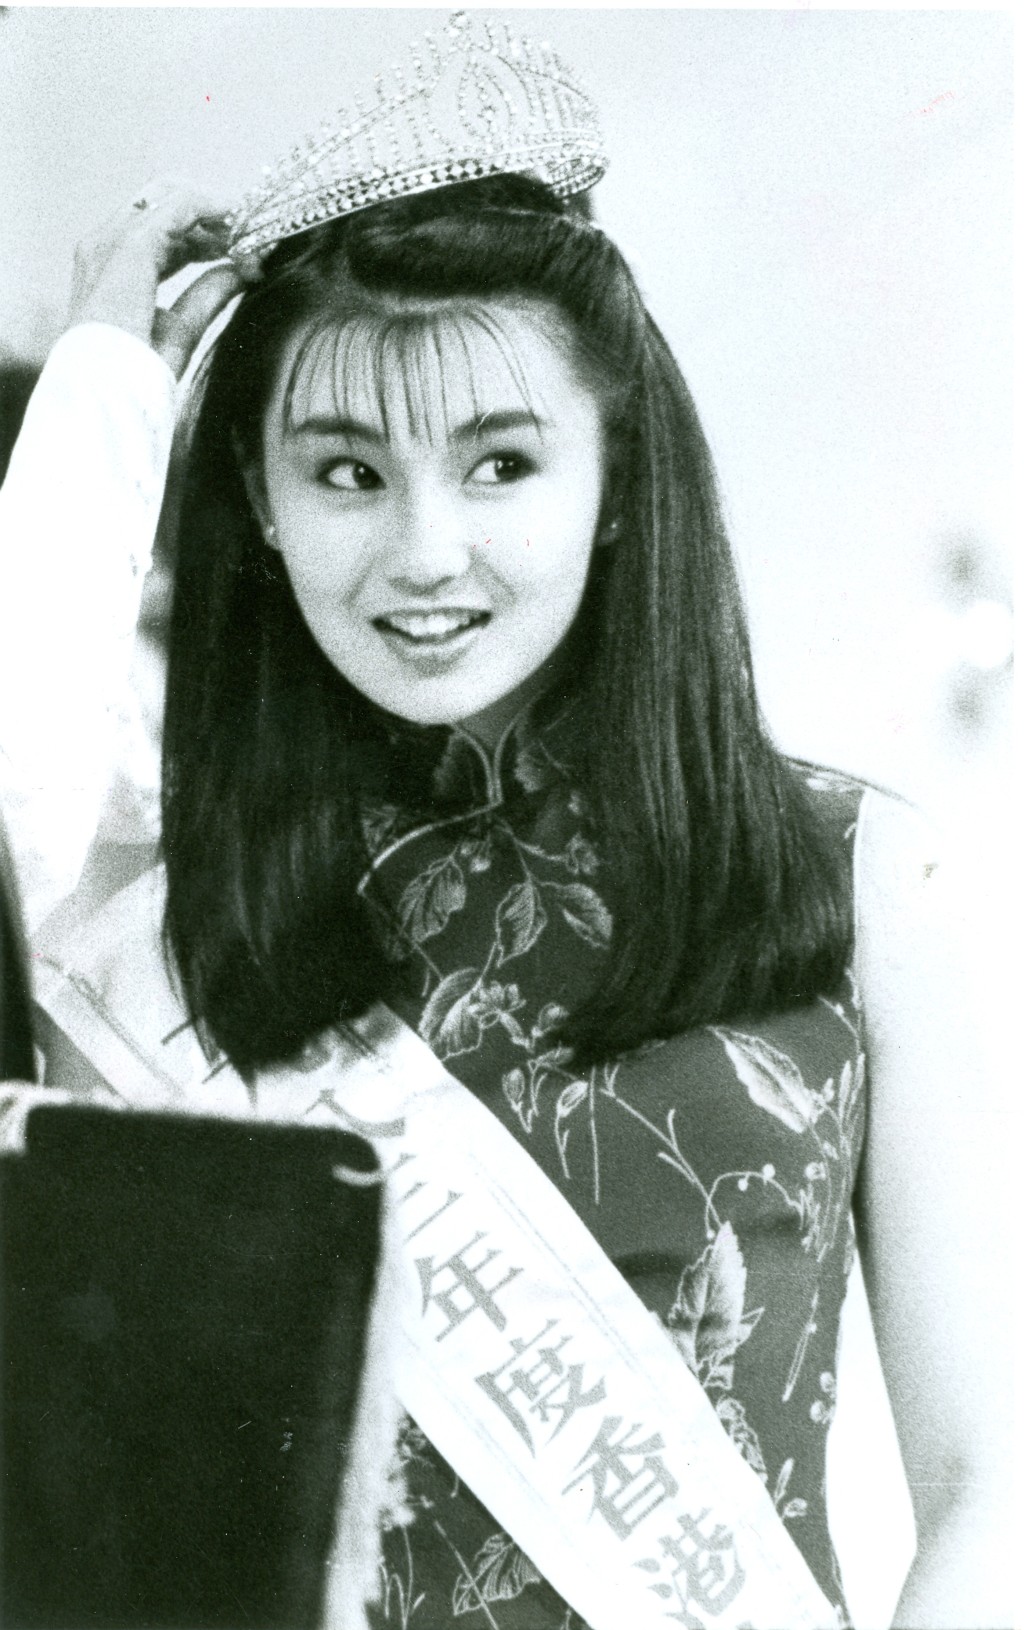 張曼玉在1982年從英國返港參加港姐並獲得亞軍及最上鏡小姐獎，其後加入TVB做藝員，接着轉戰拍電影，星運相當亨通。